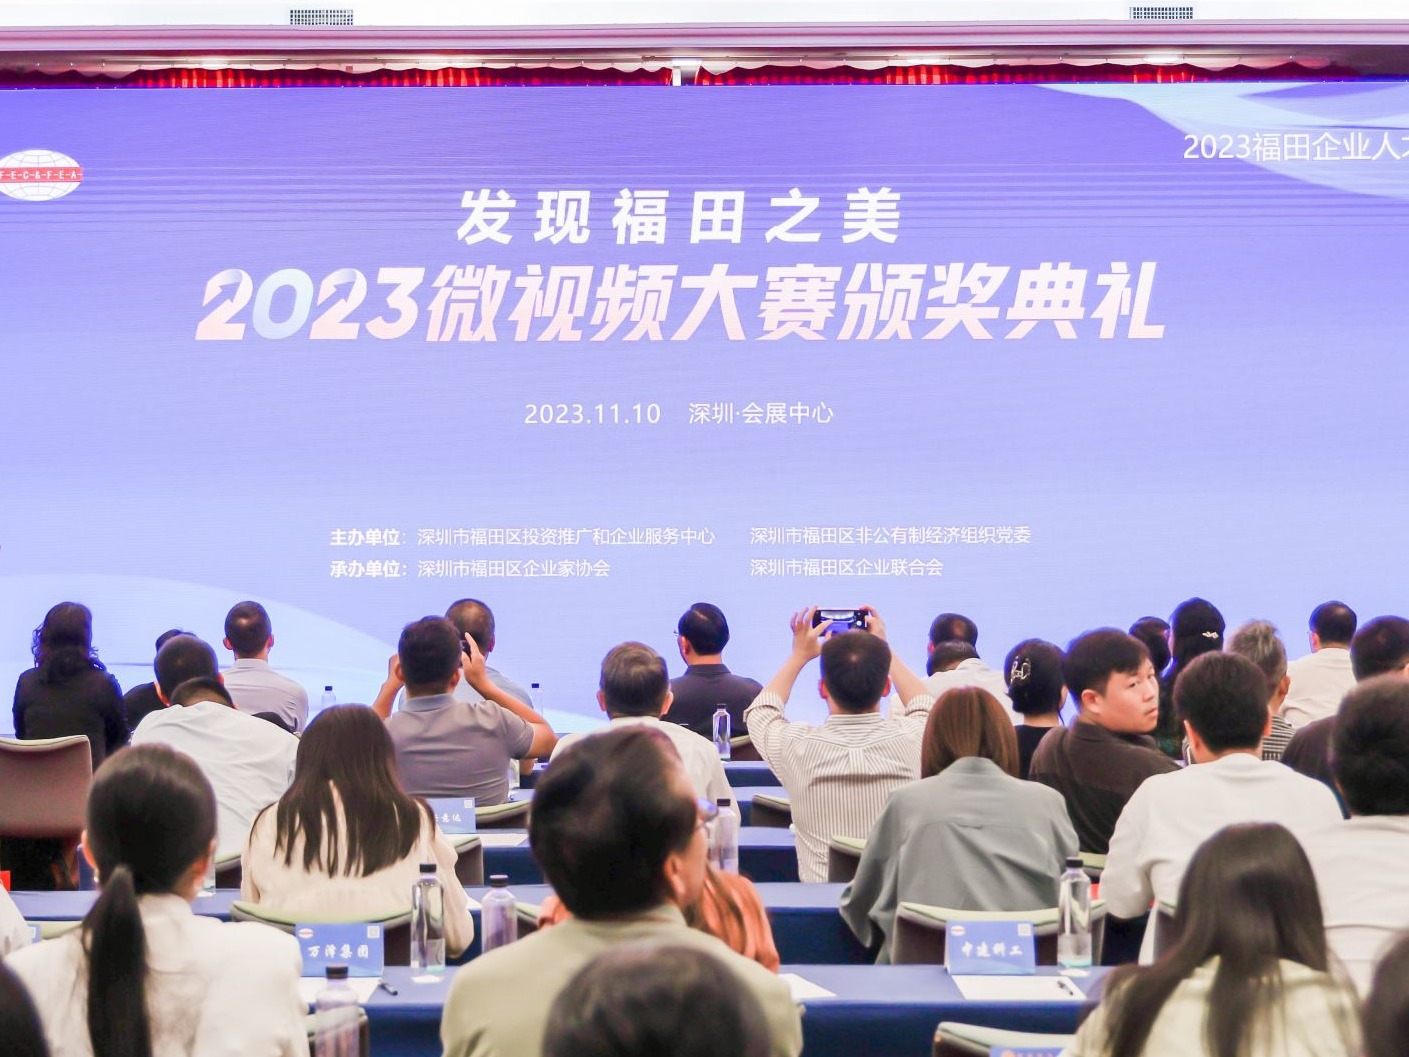 2023福田企业人才主题文化活动微视频大赛颁奖典礼成功举行